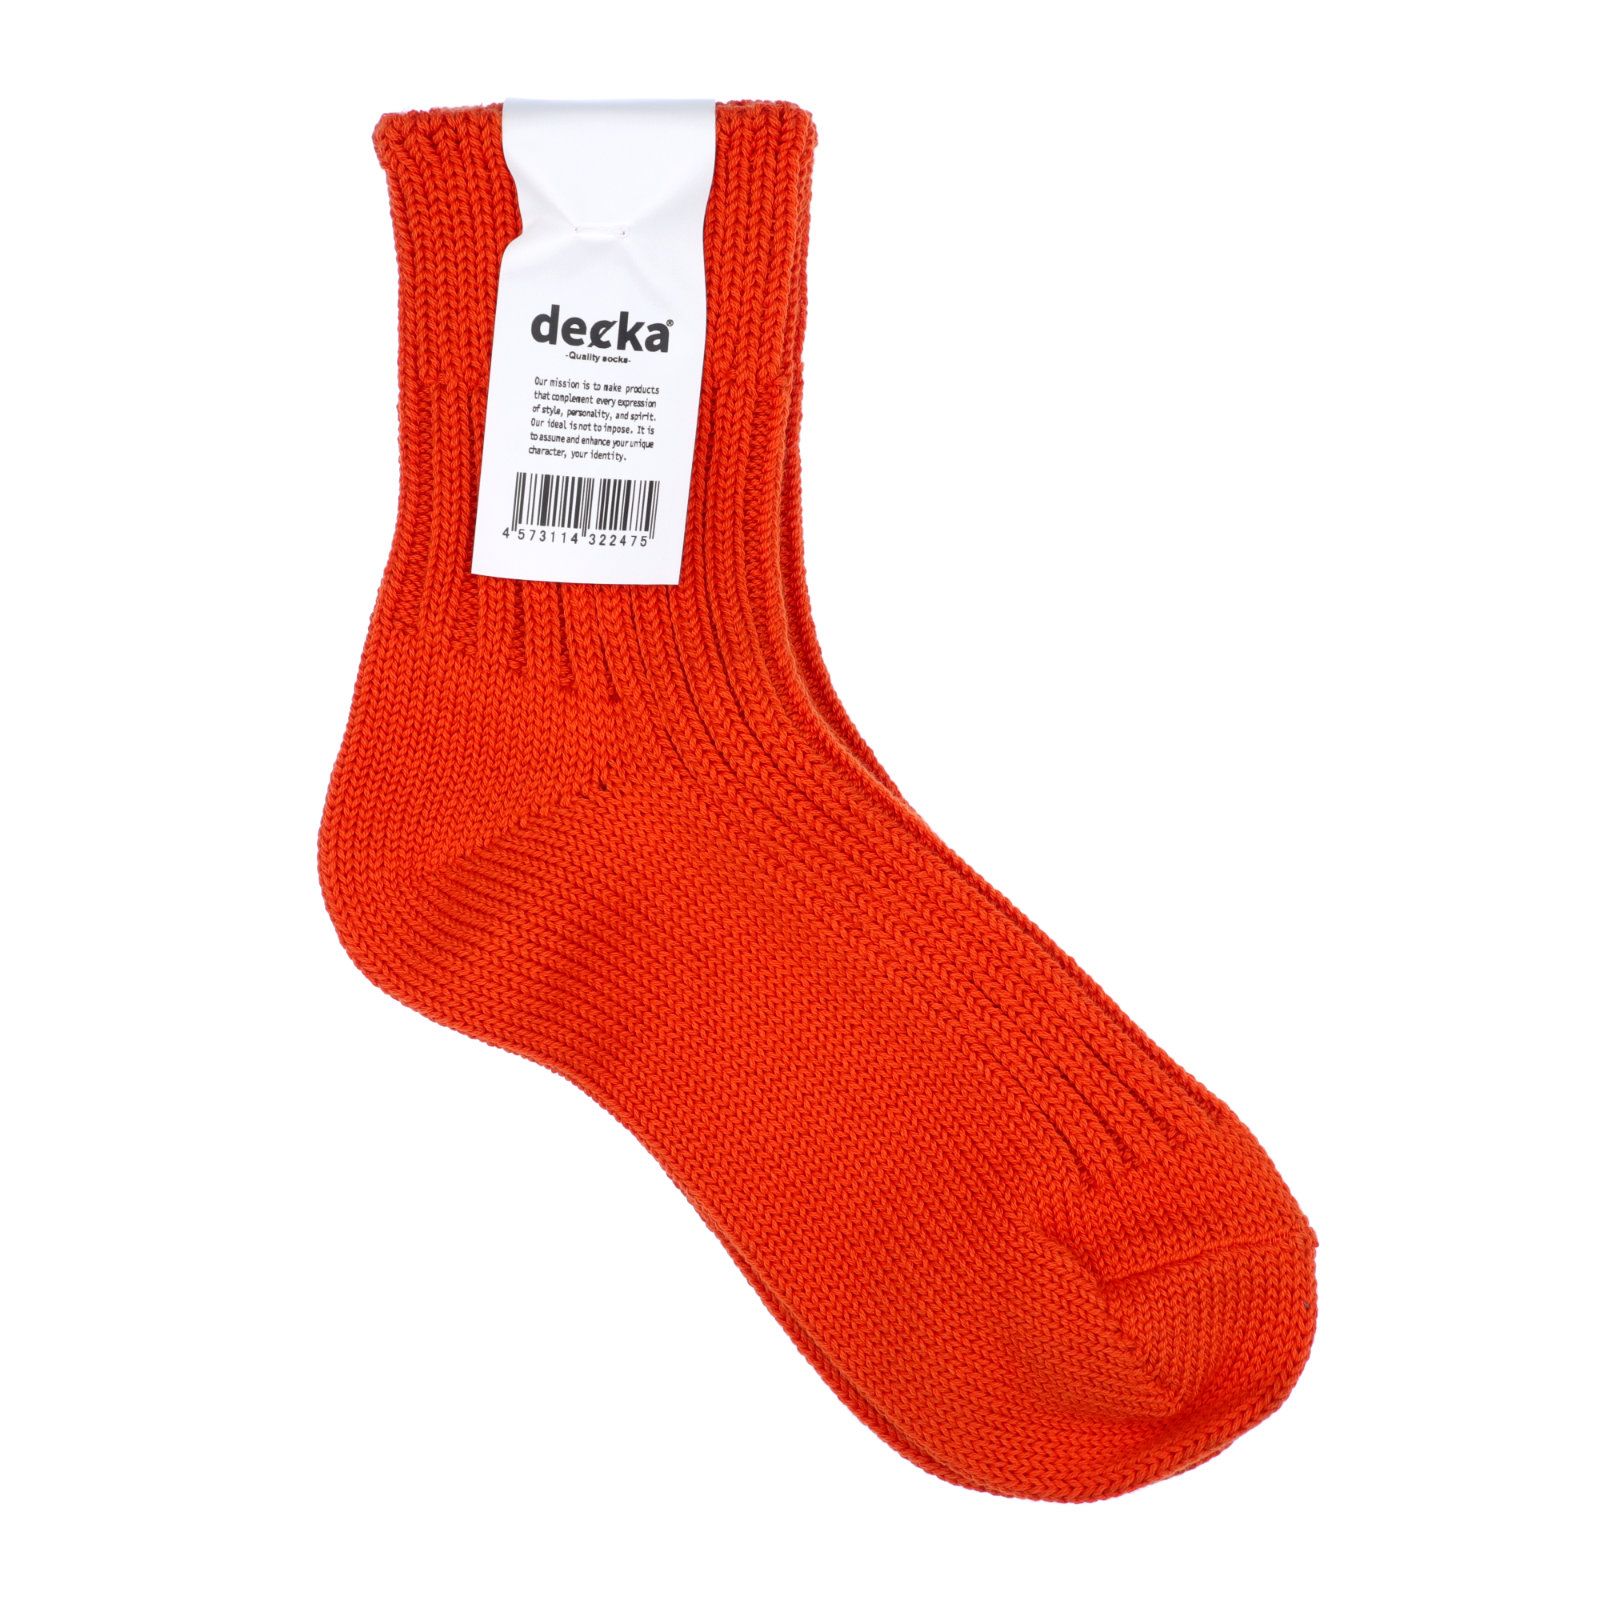 decka quality socks - Low Gauge Rib Socks Short Length ネオン 